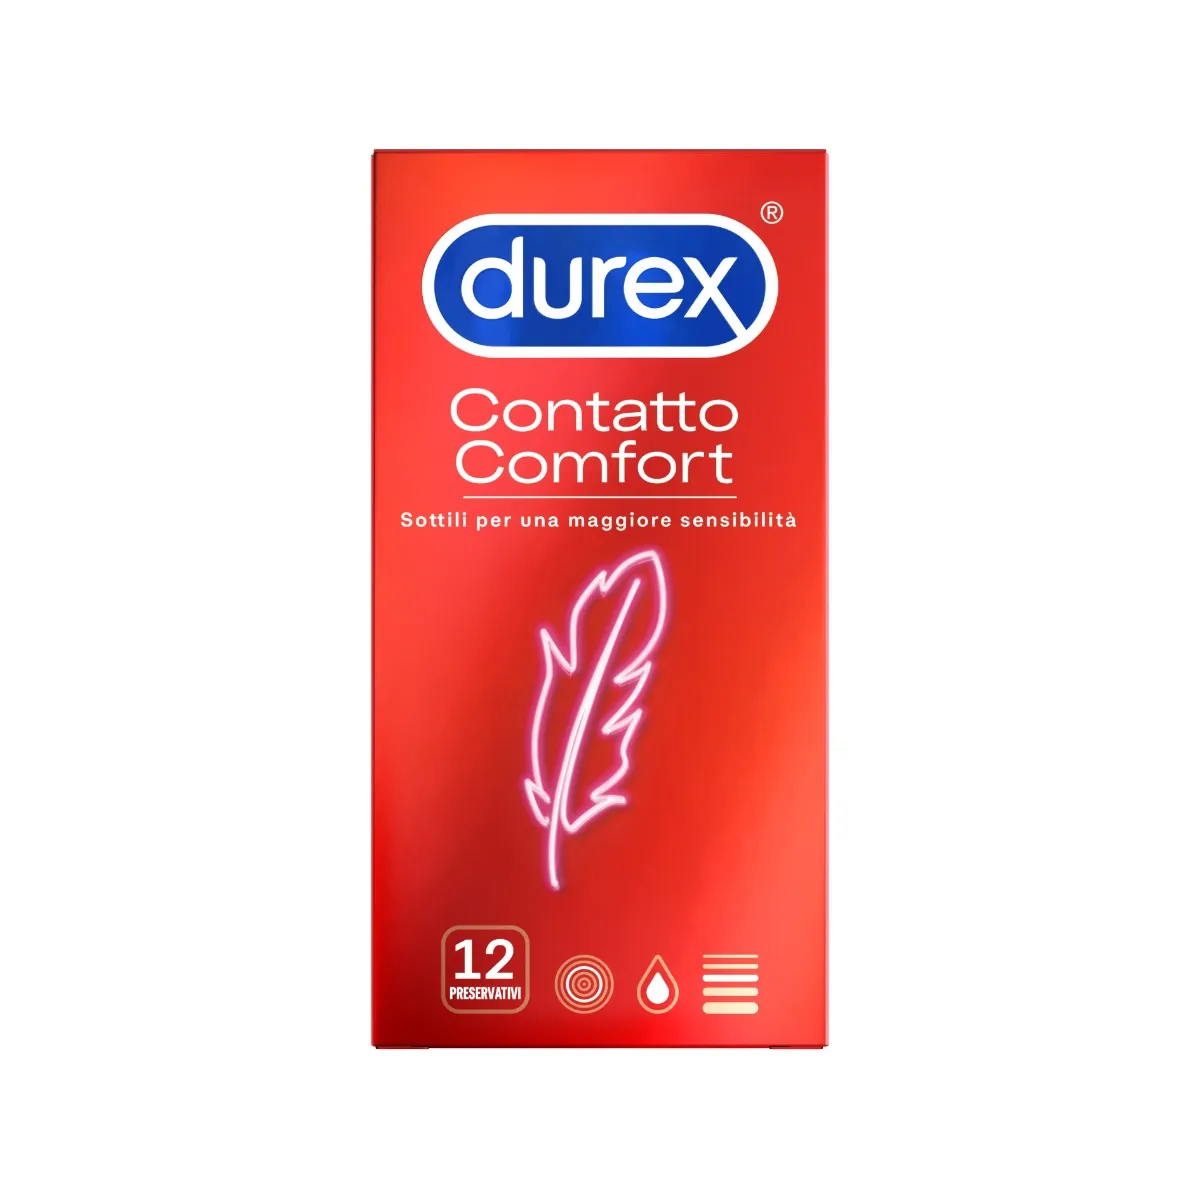 Durex Contatto Comfort Profilattici Sottili 12 Pezzi Elevata Lubrificazione